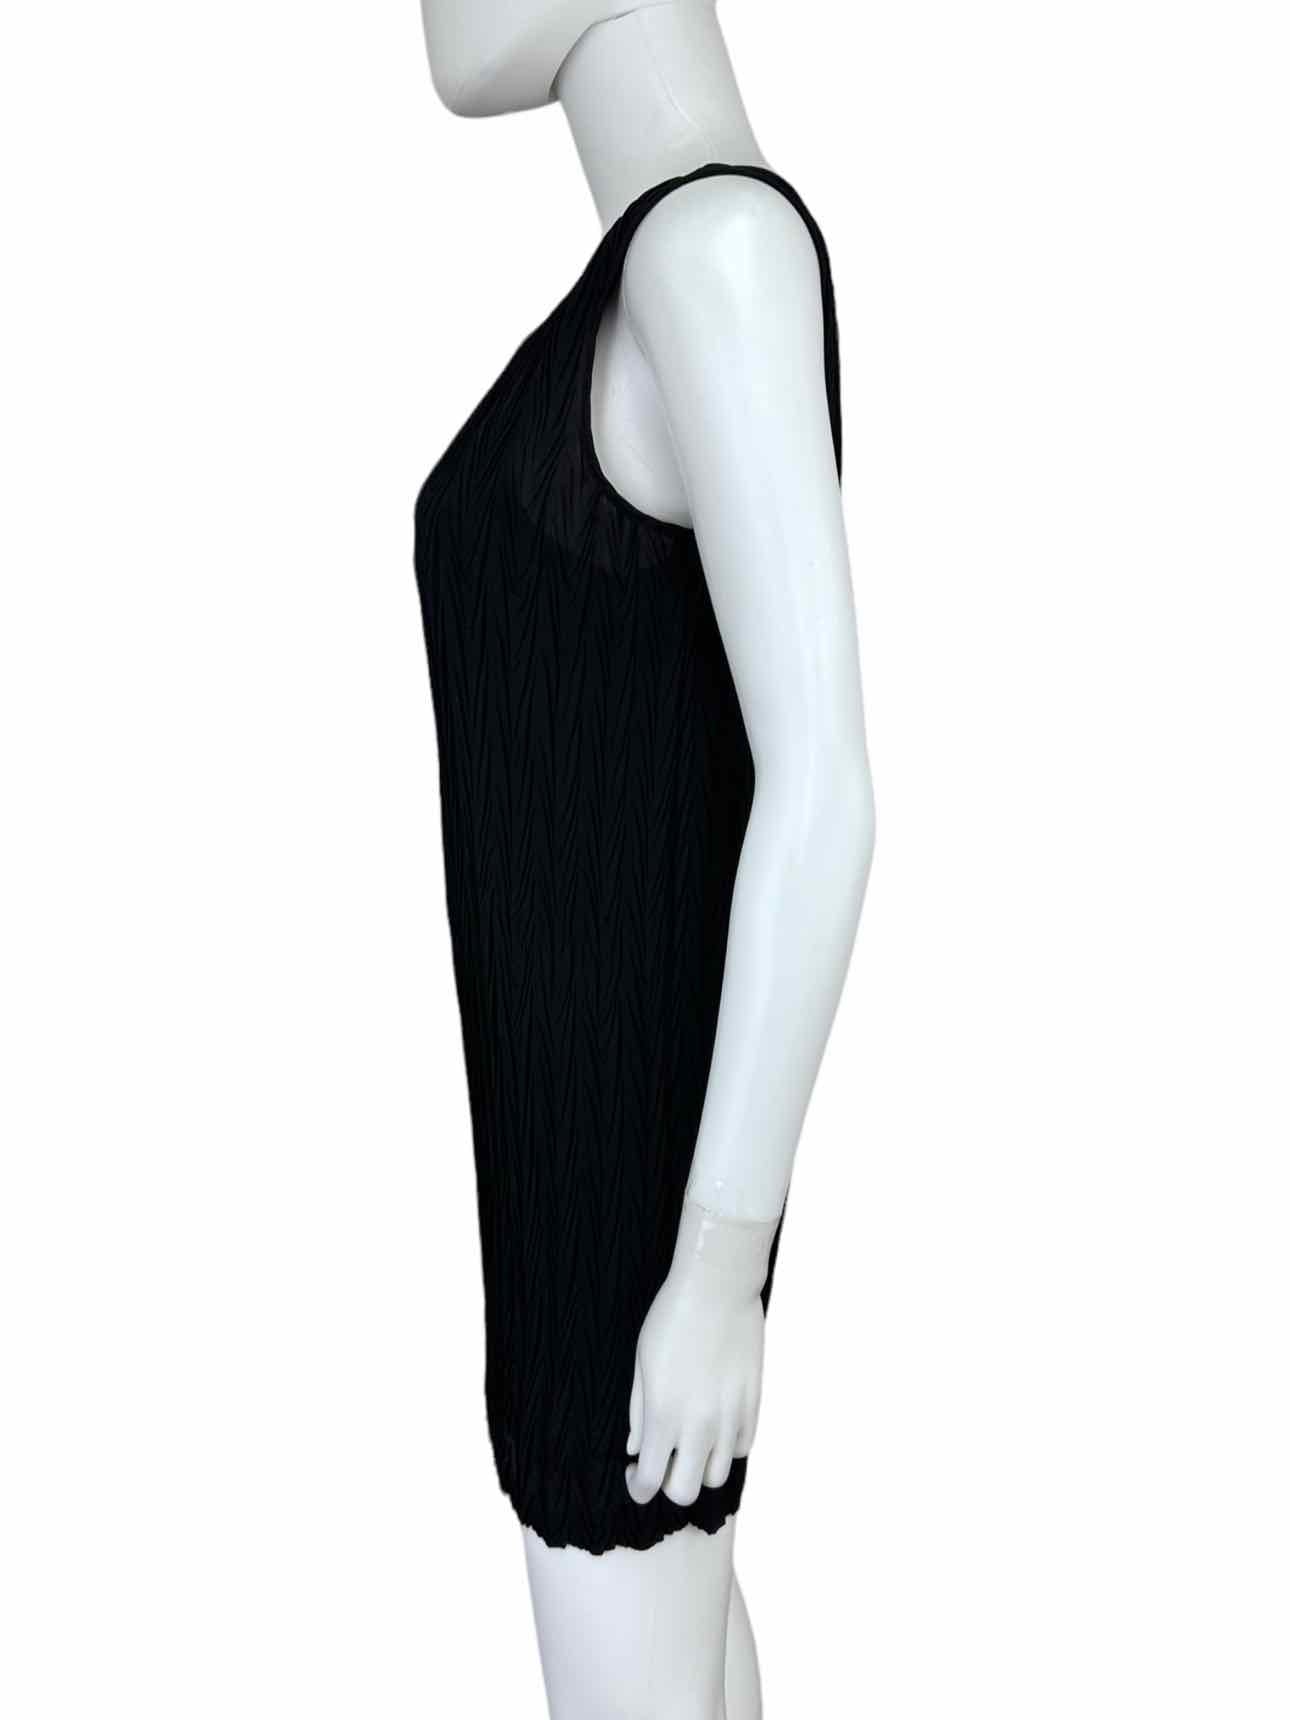 Vivienne Tam Black Textured Pattern Dress Size 1